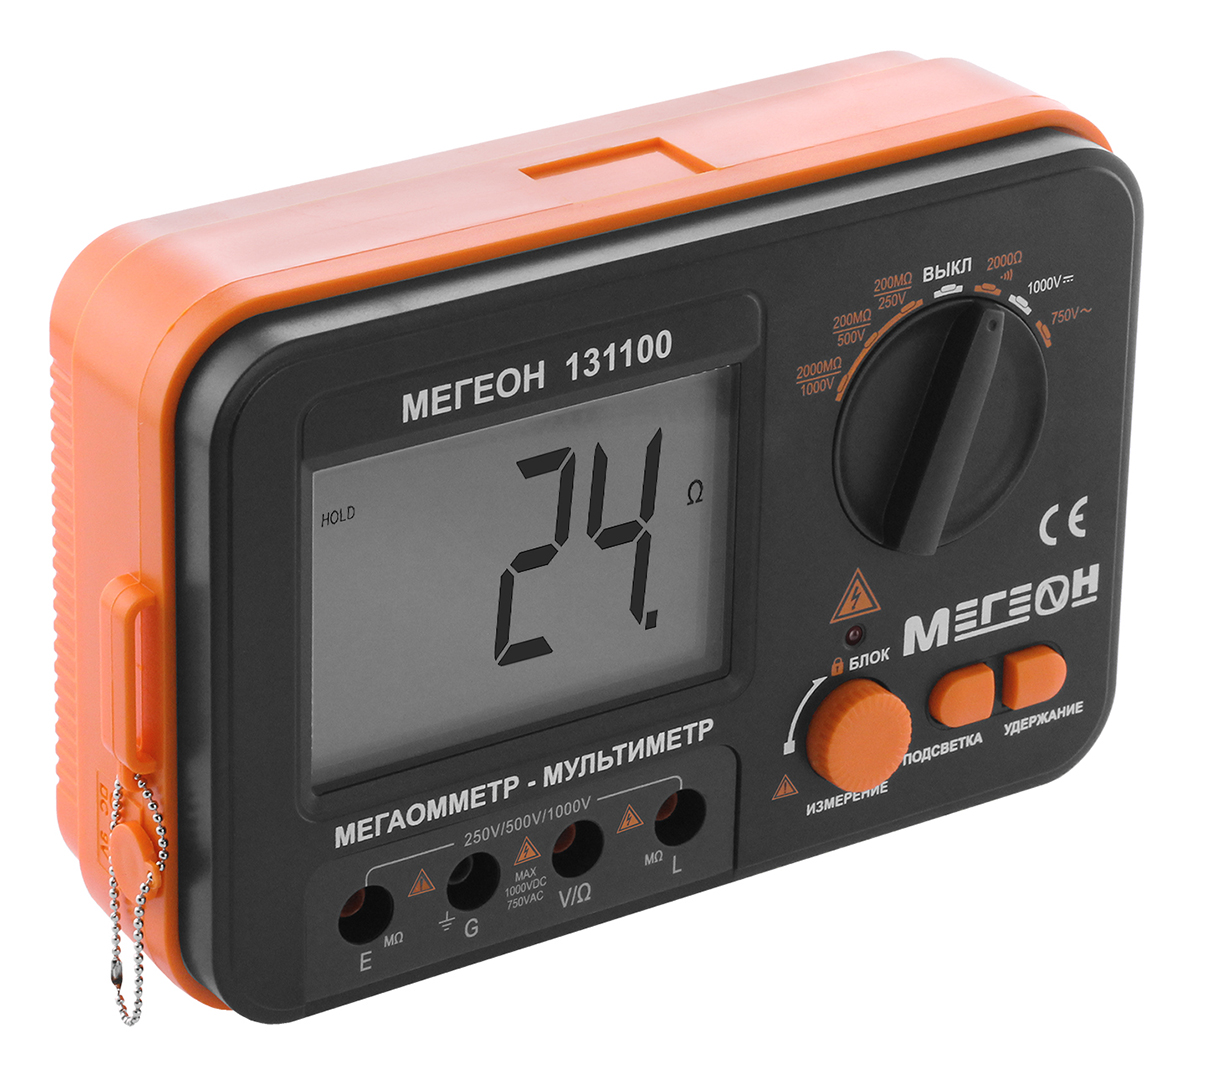 Мегаомметр (измеритель сопротивления изоляции) МЕГЕОН 131100 газоанализатор измеритель концентрации сероводорода мегеон 08011